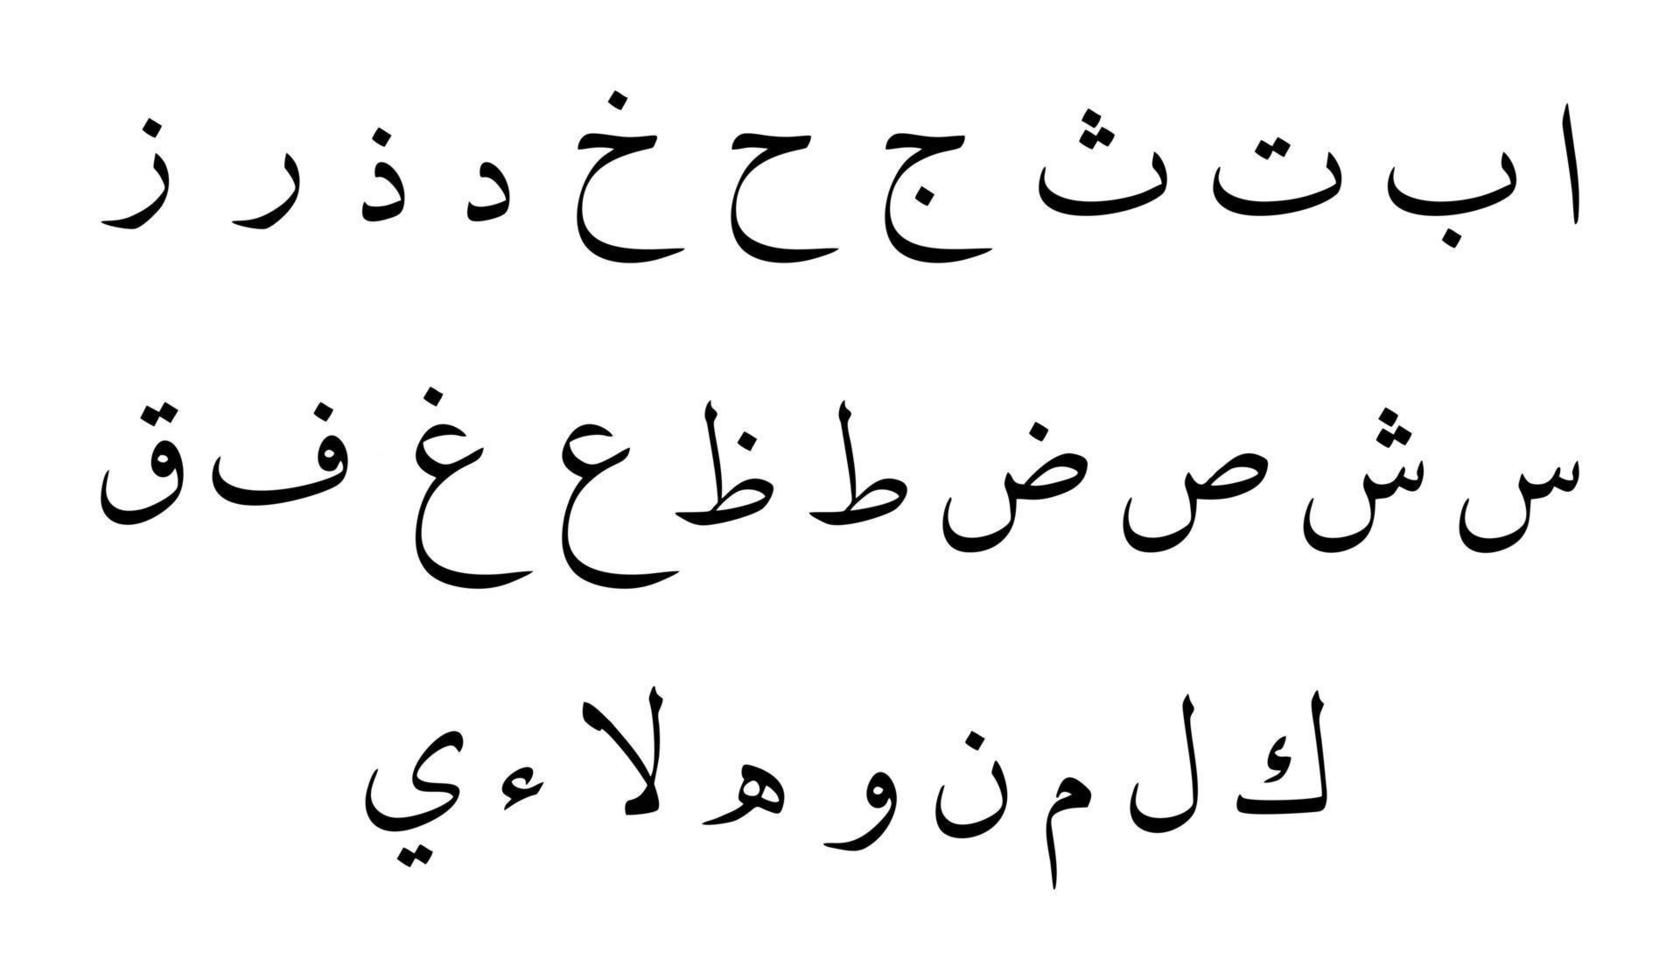 insieme di set di vettori di alfabeto arabo. elementi di calligrafia araba.